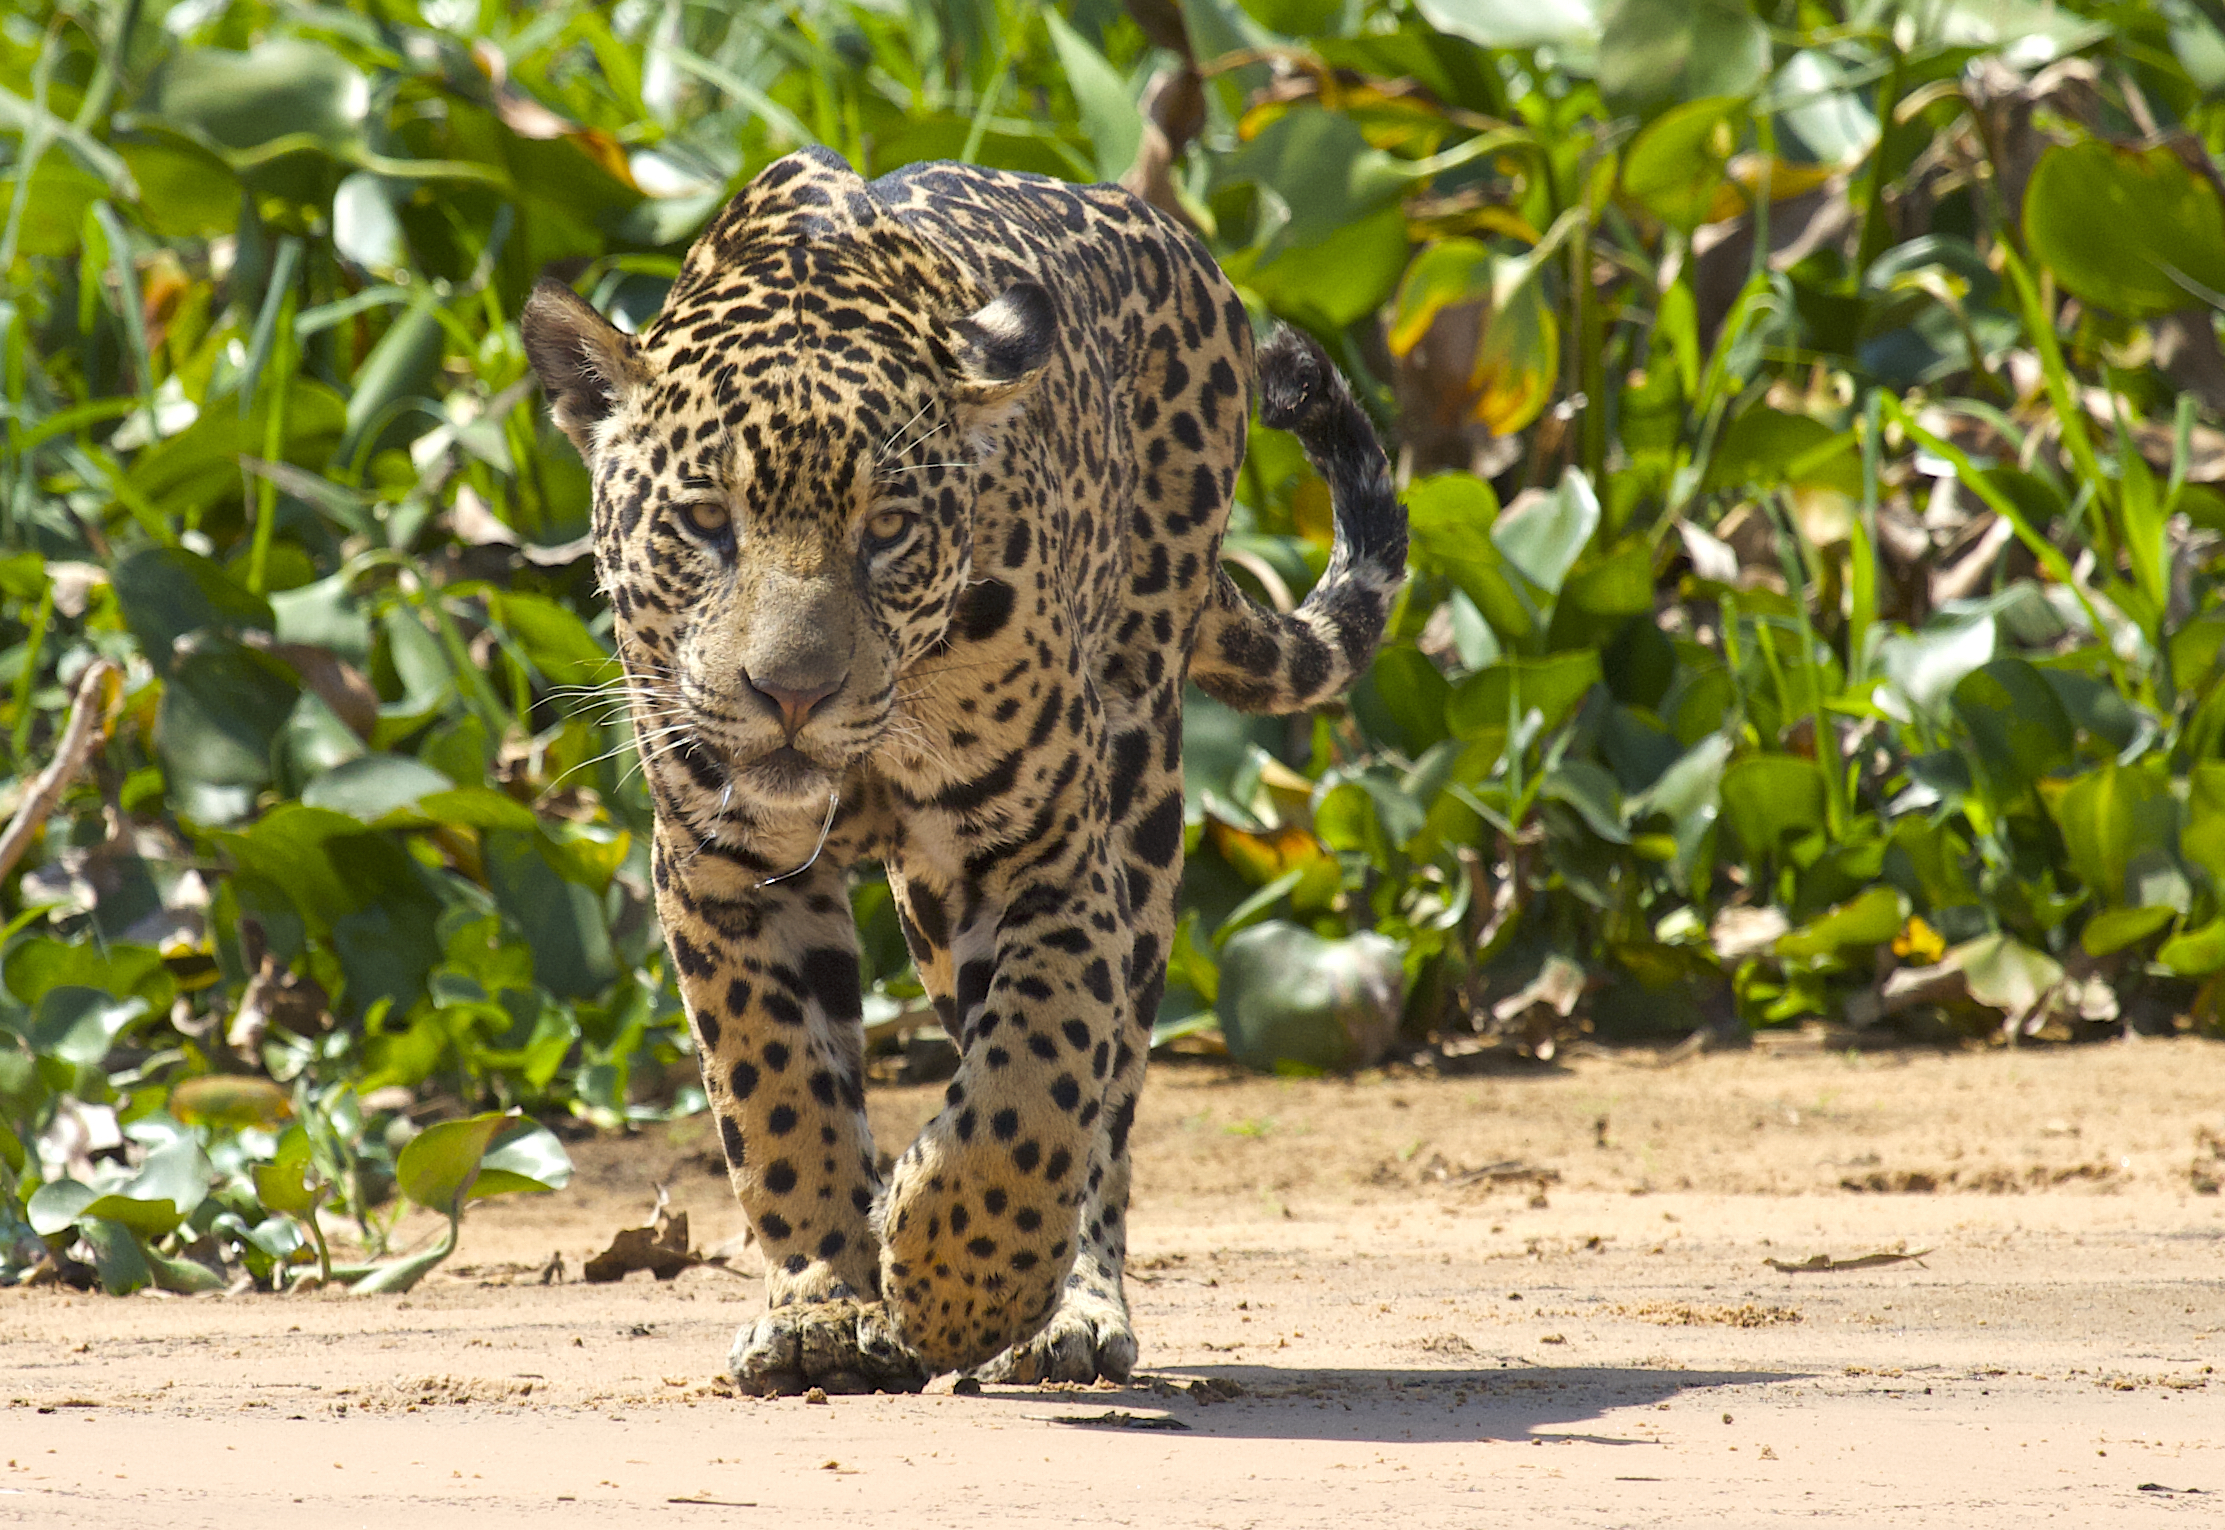 Jaguar drooling while defending territory, Pantanal, Brazil.